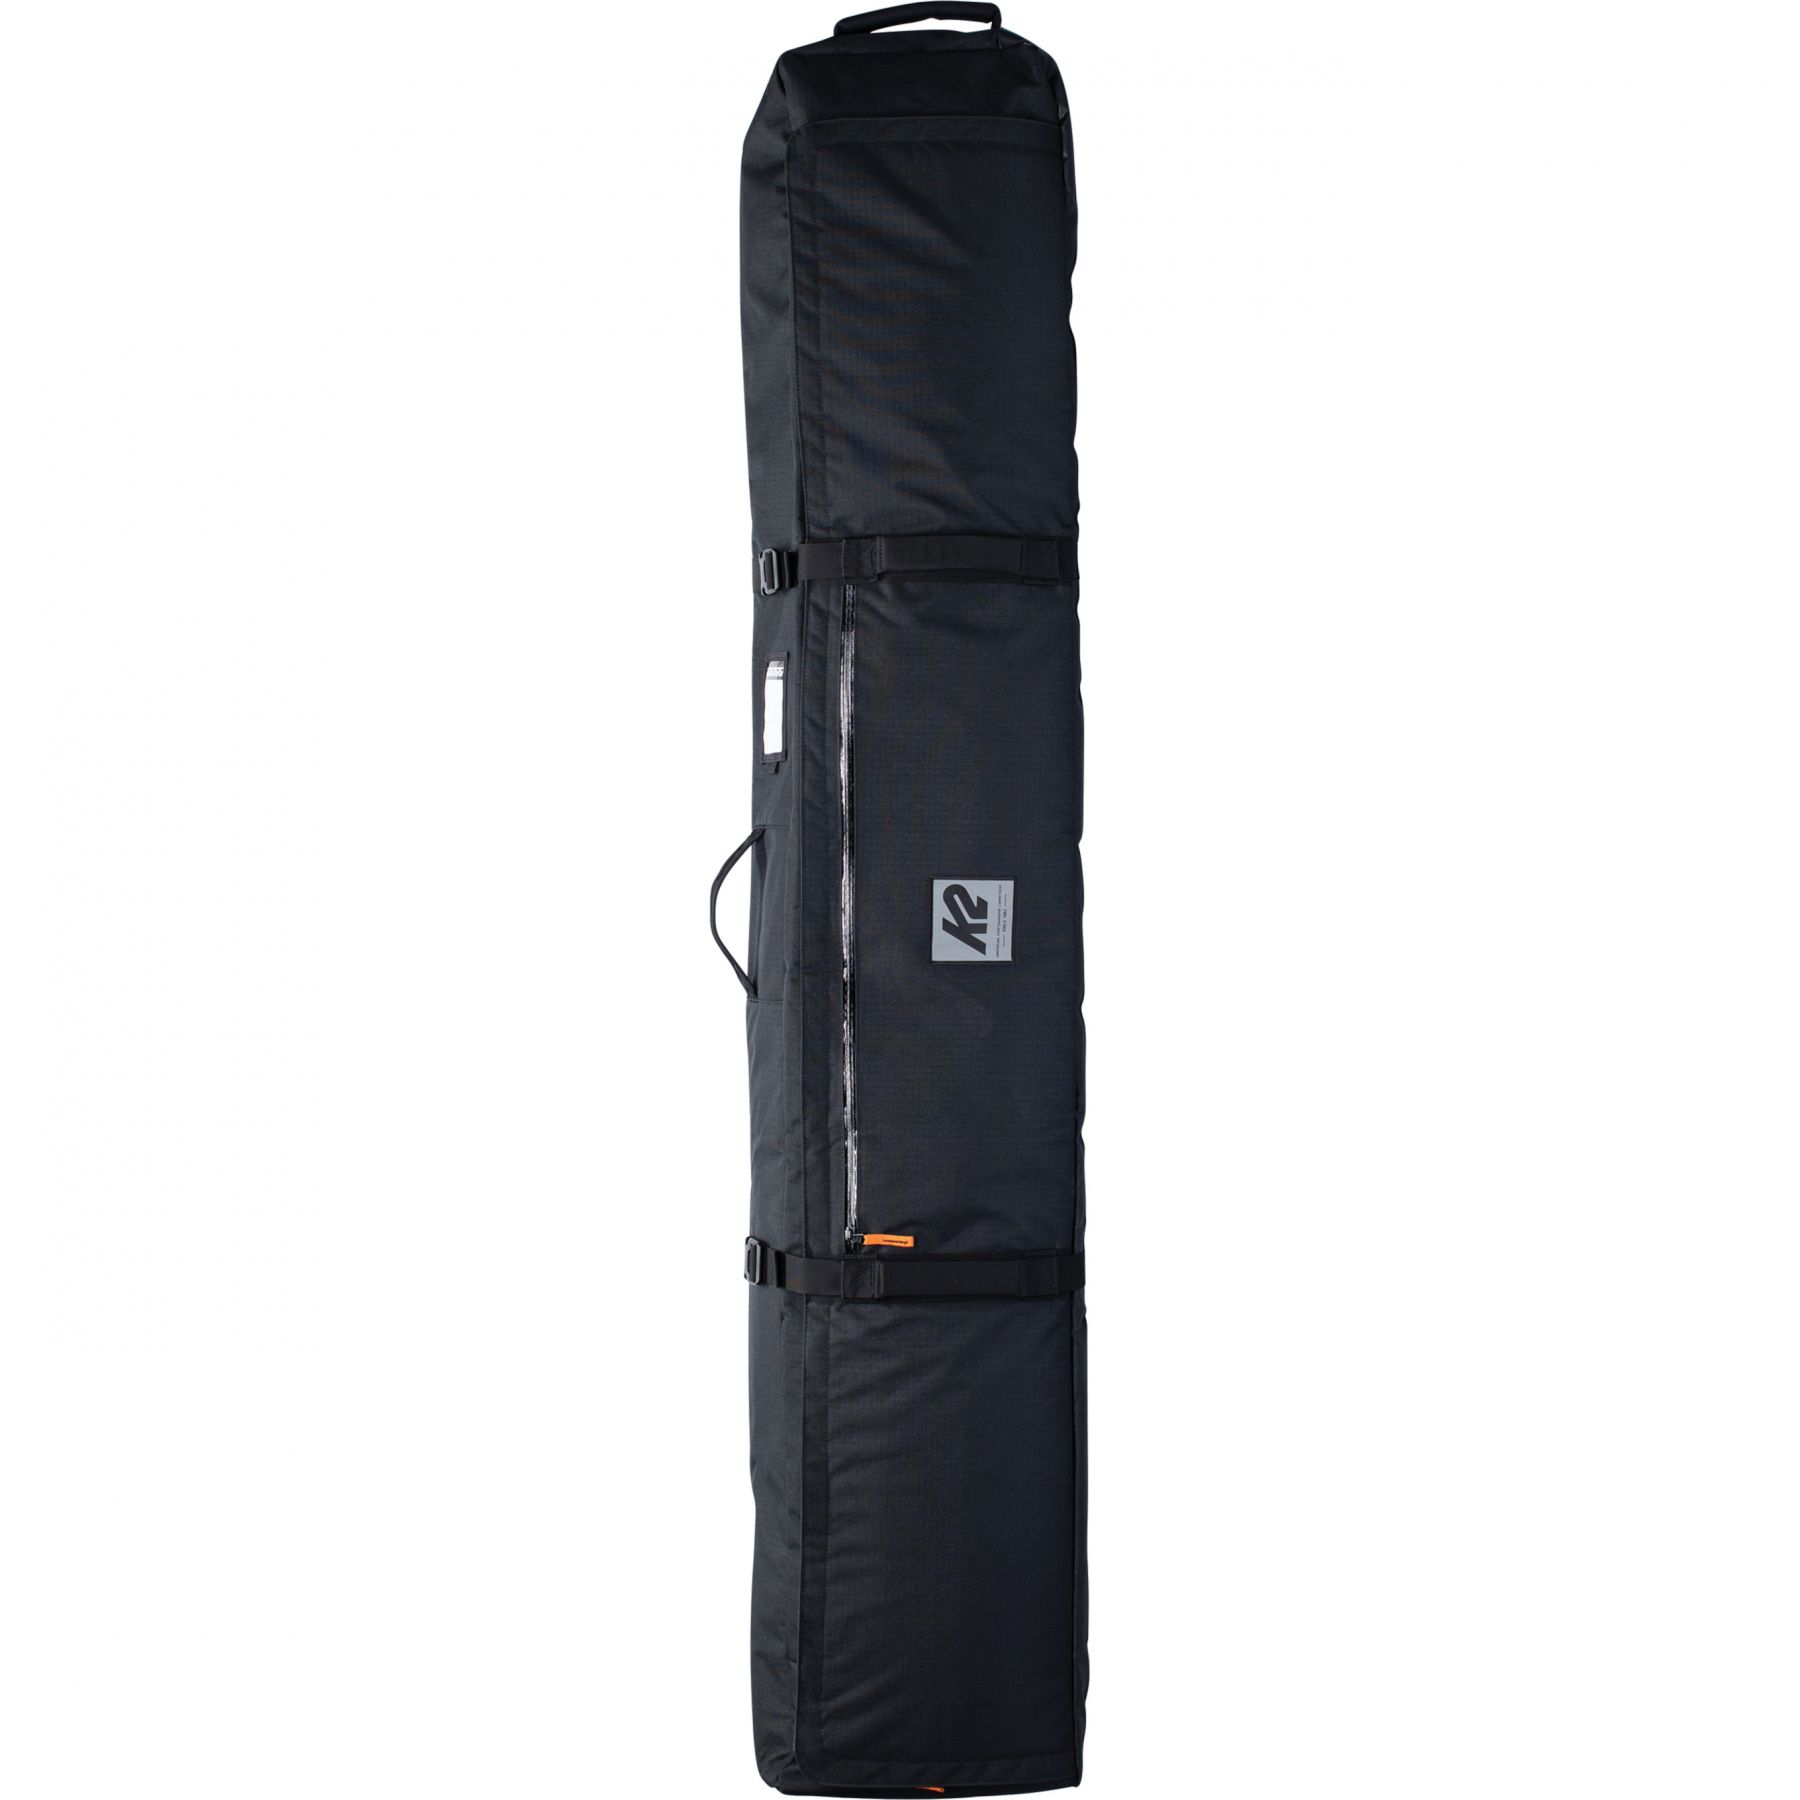 Brug K2 Roller Ski Bag, skitaske med hjul, sort til en forbedret oplevelse